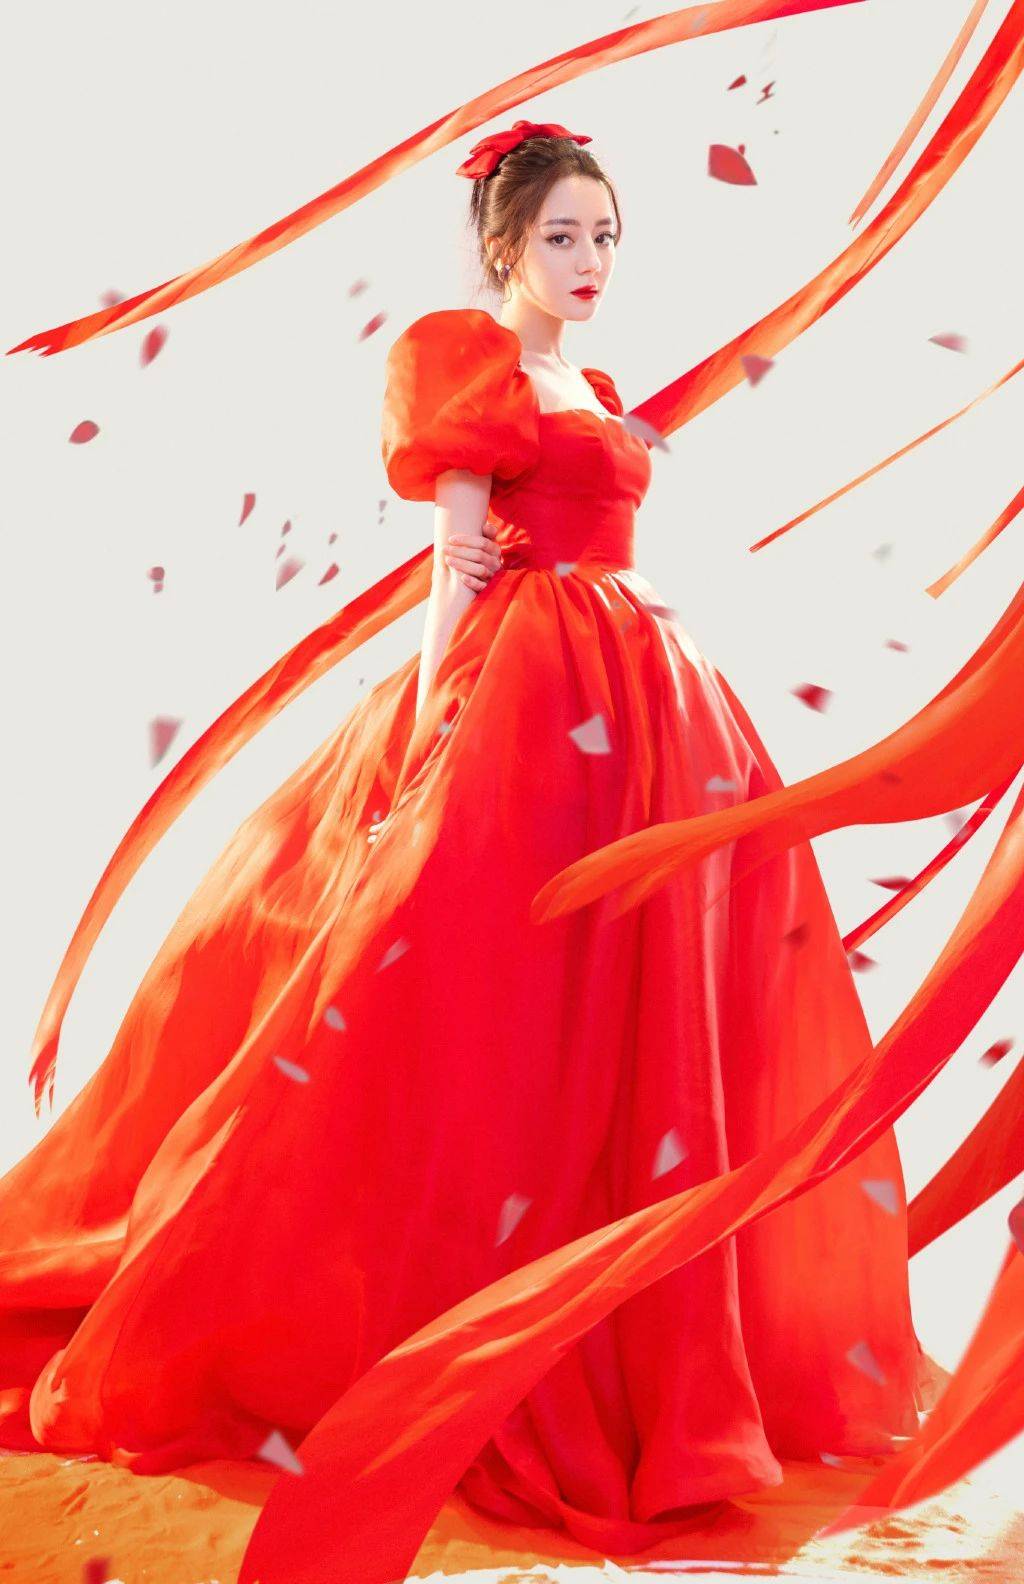 红裙动漫少女唯美桌面壁纸-桌面壁纸下载-云猫壁纸网